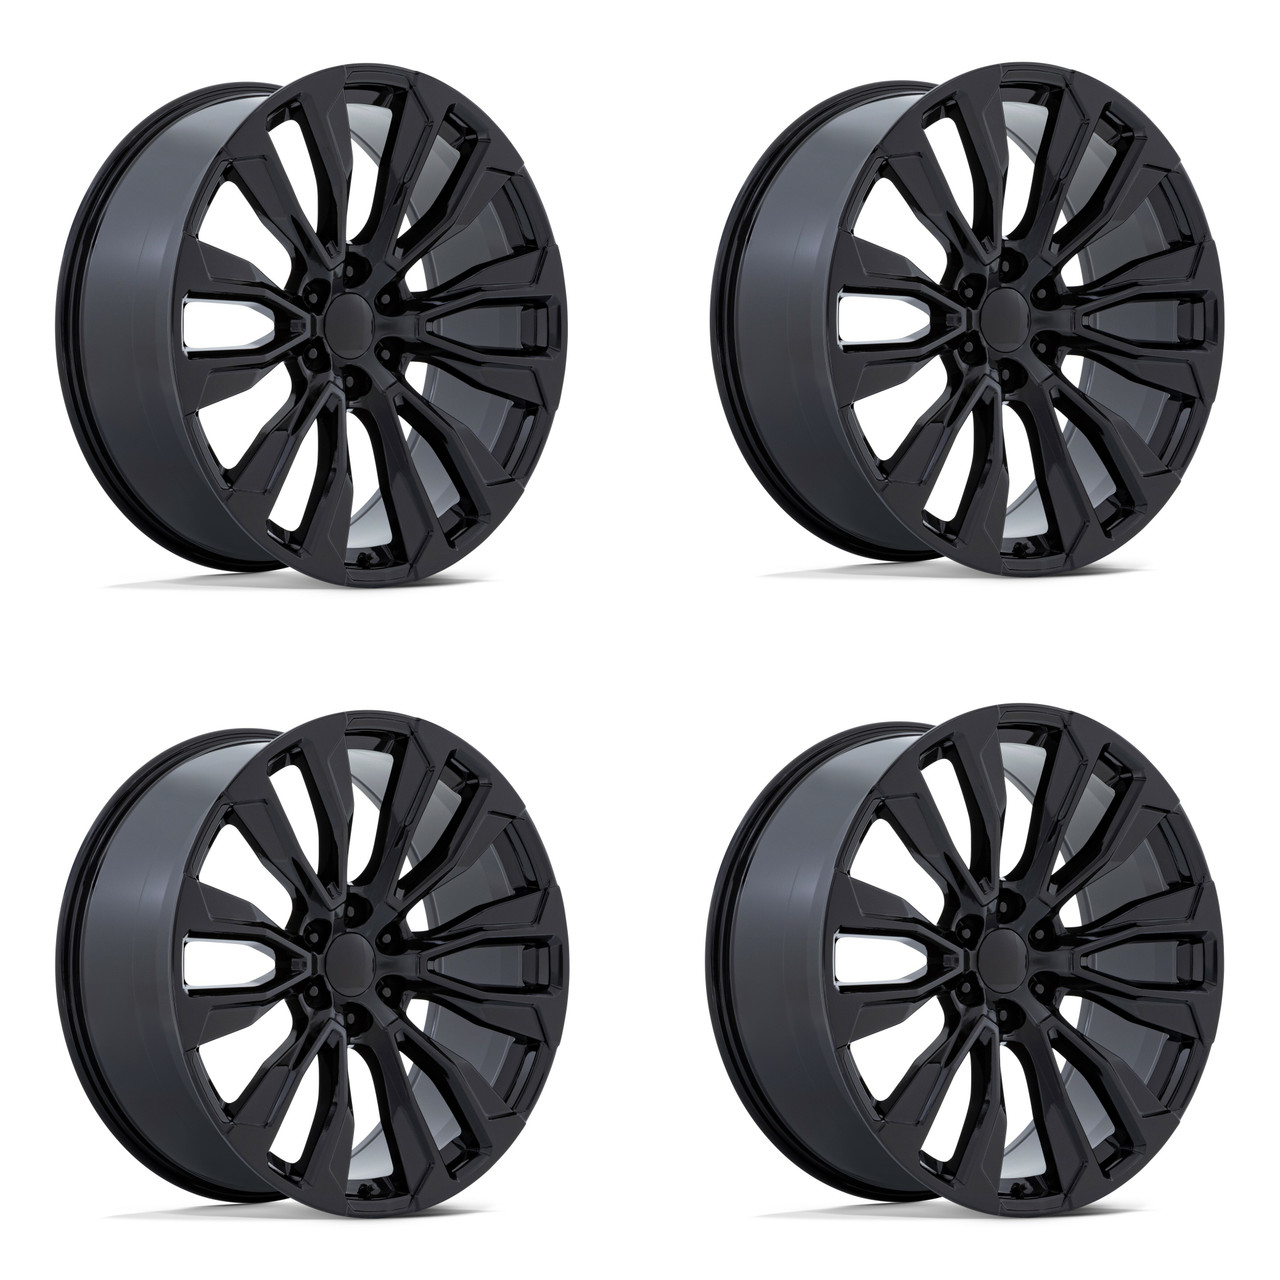 Set 4 Performance Replicas PR211 22x9 6x5.5 Gloss Black Wheels 22" 28mm Rims